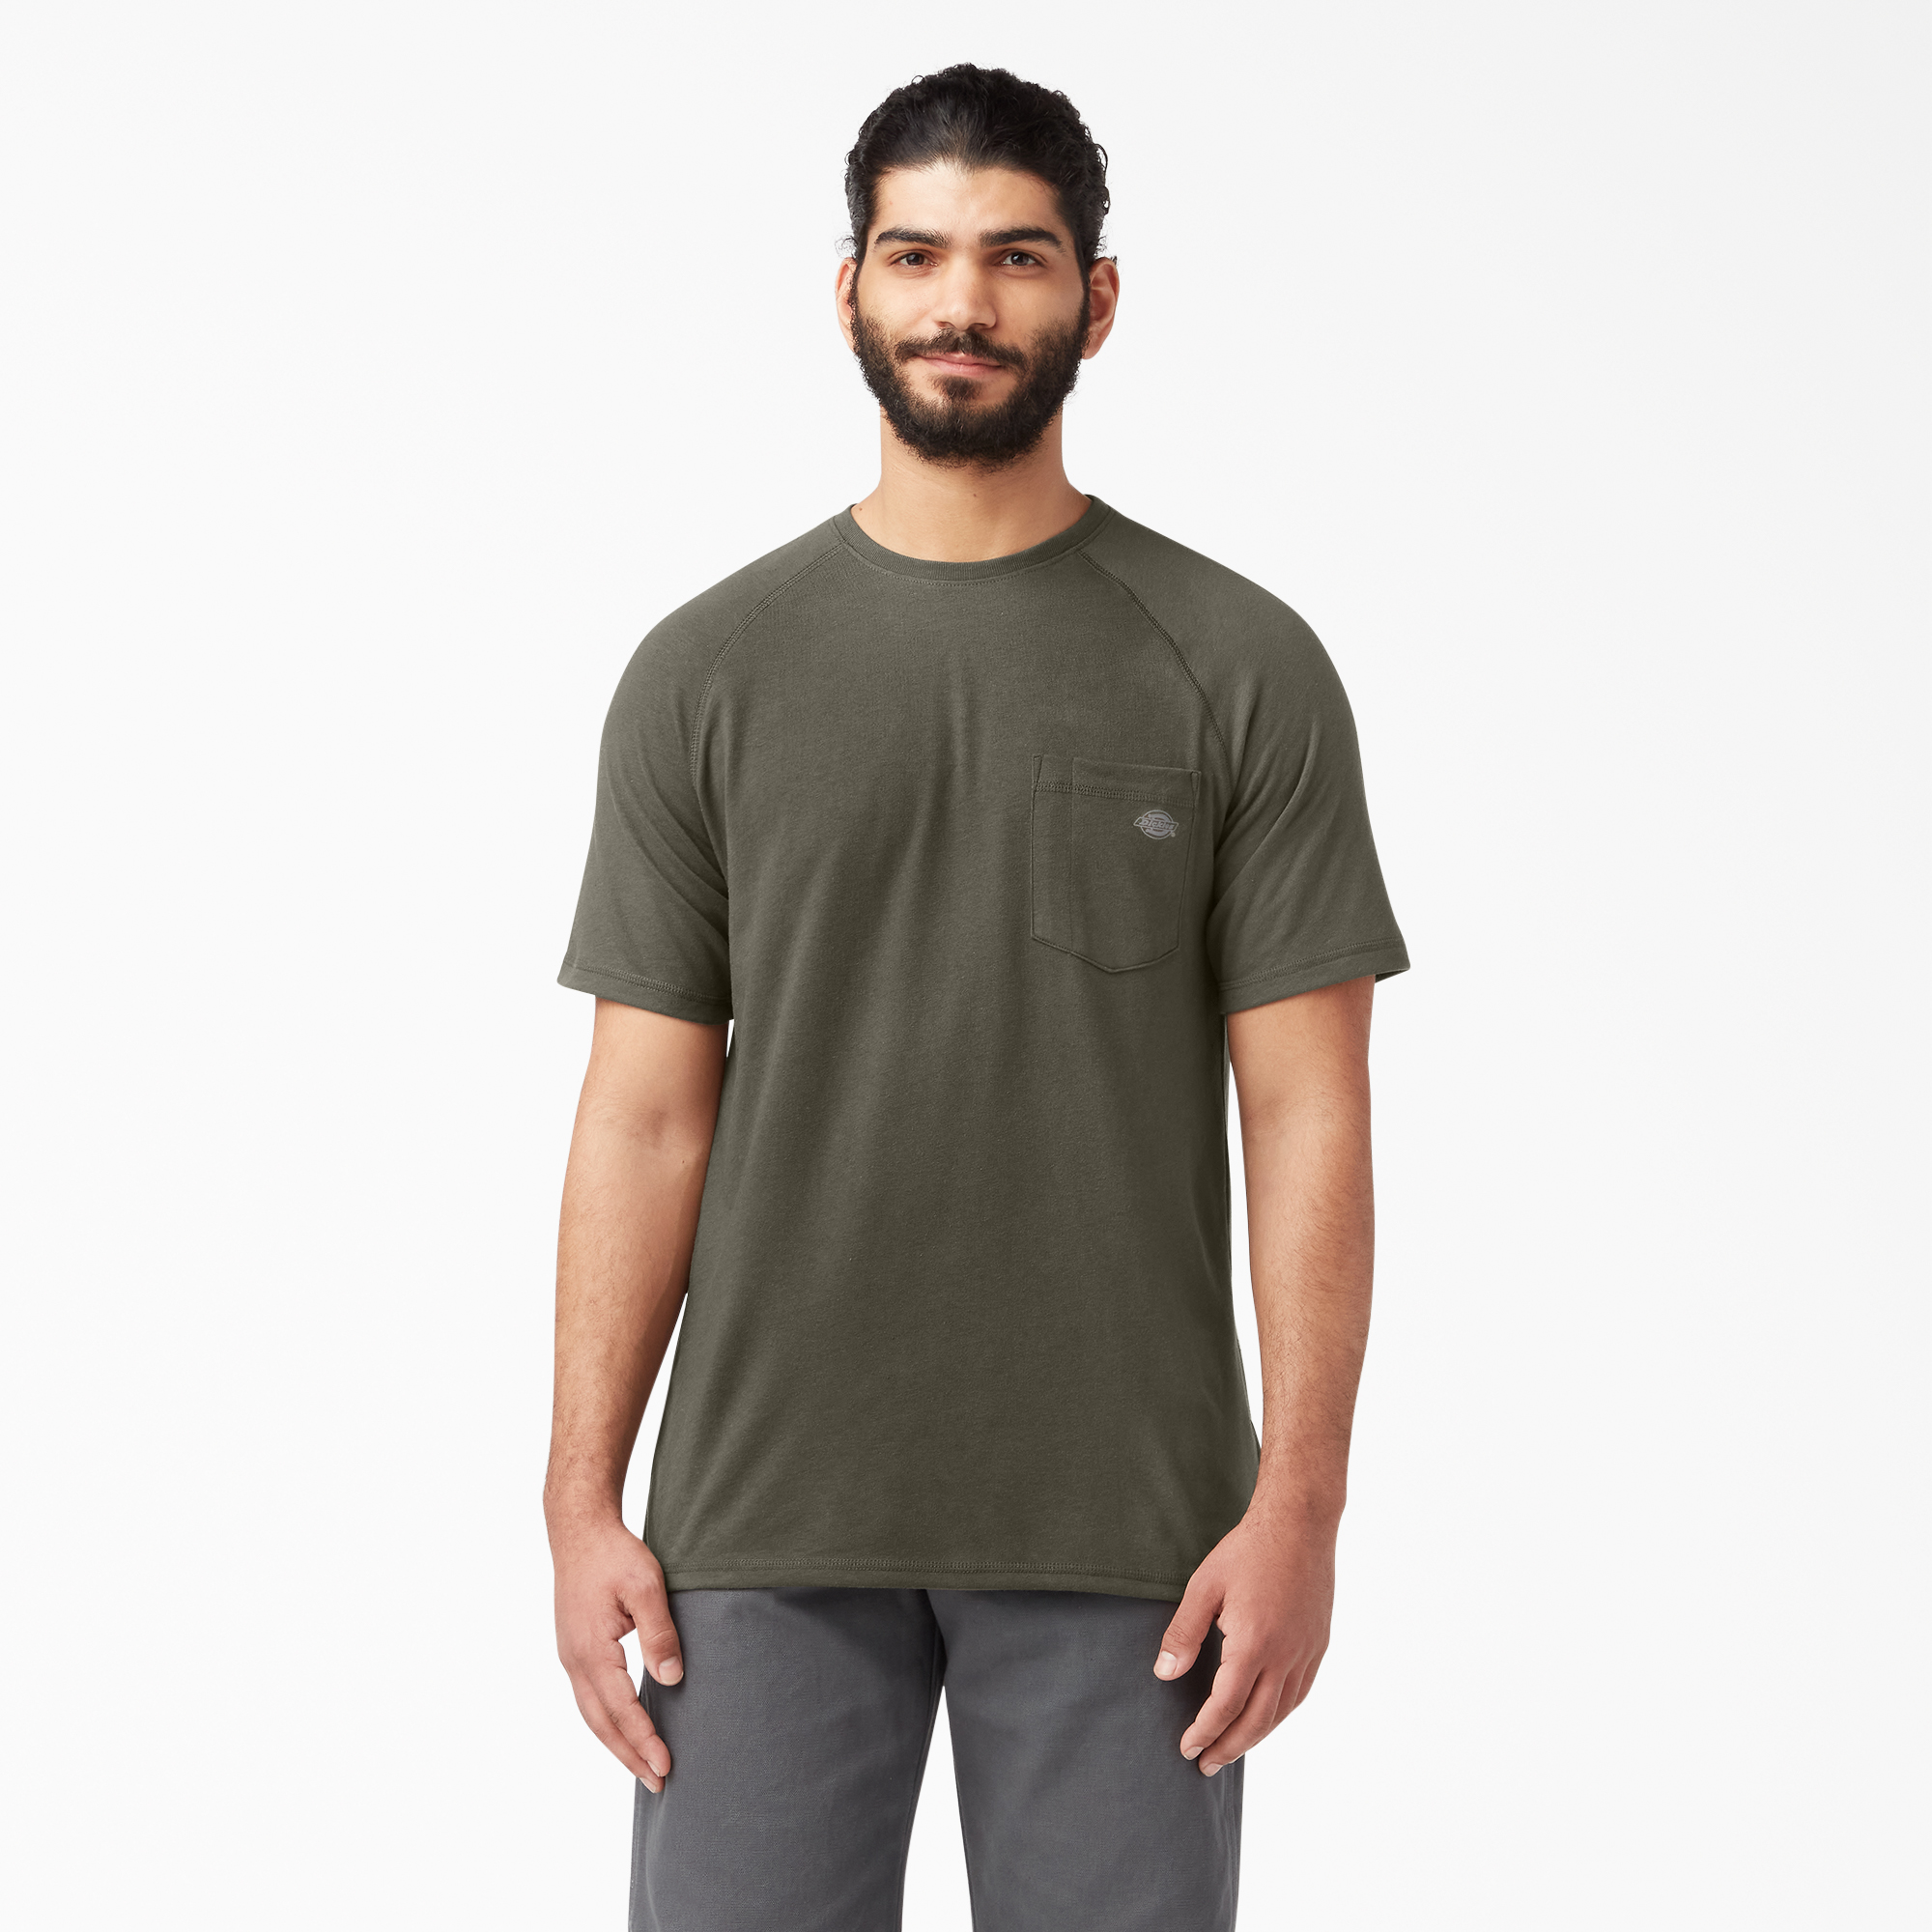 Cooling Short Sleeve T-Shirt - Moss Green (MS)